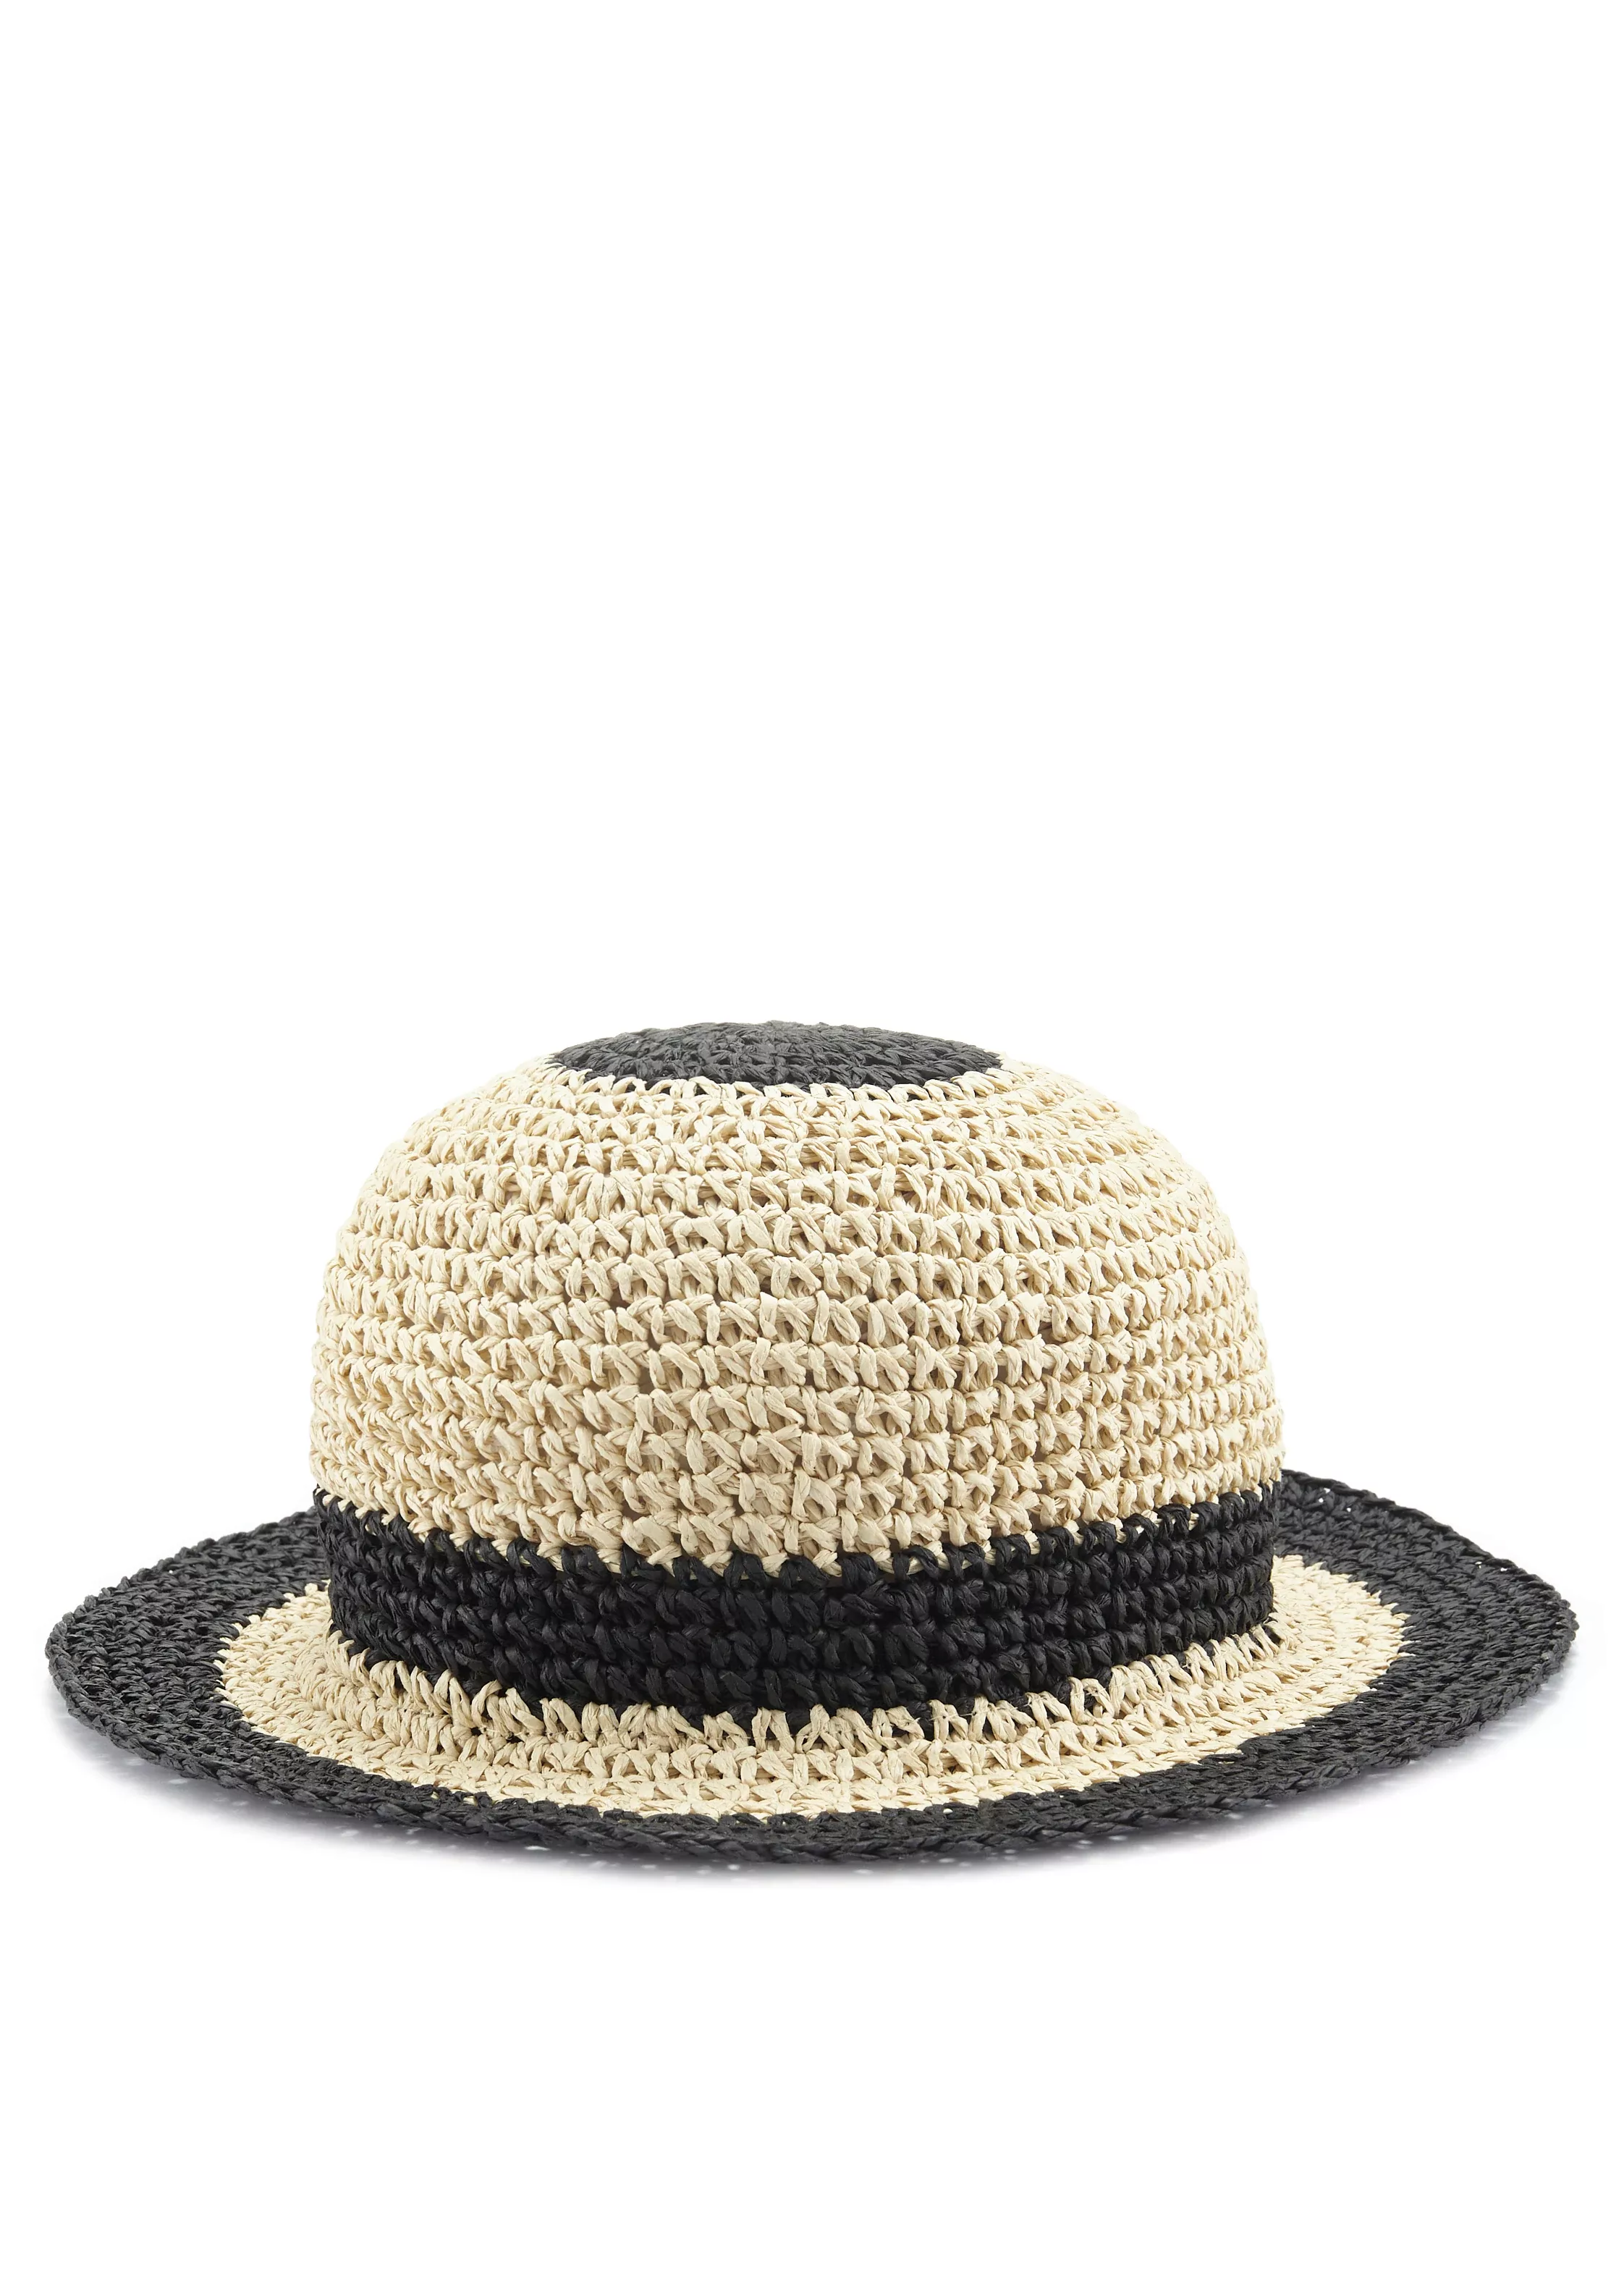 LASCANA Strohhut, Bucket Hat aus Stroh, Sommerhut, Kopfbedeckung VEGAN günstig online kaufen